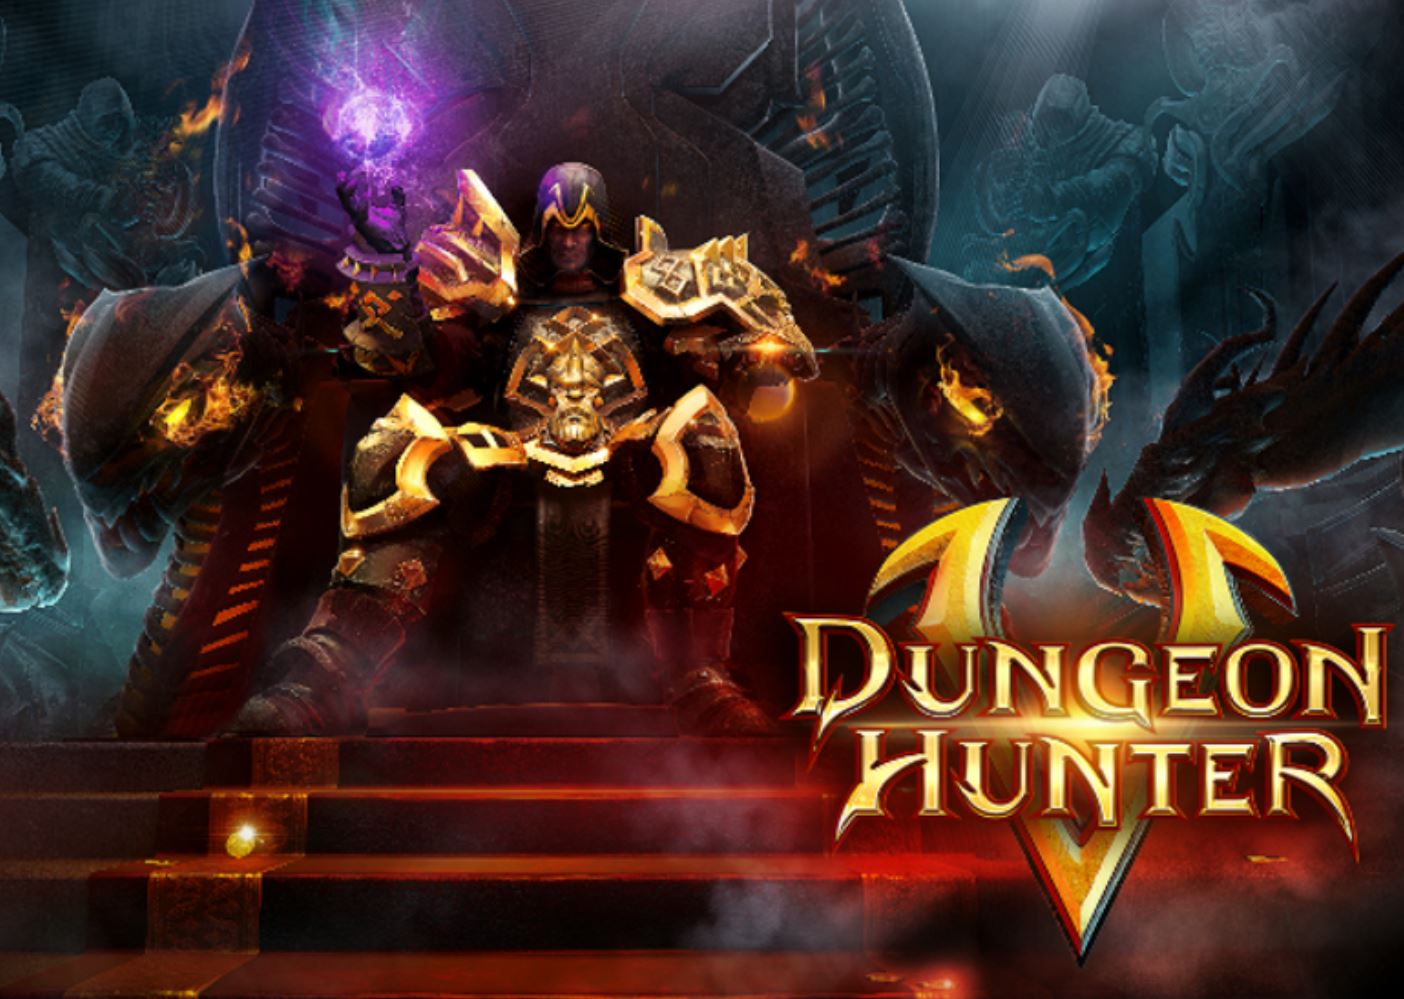 is dungeon hunter 5 offline or online